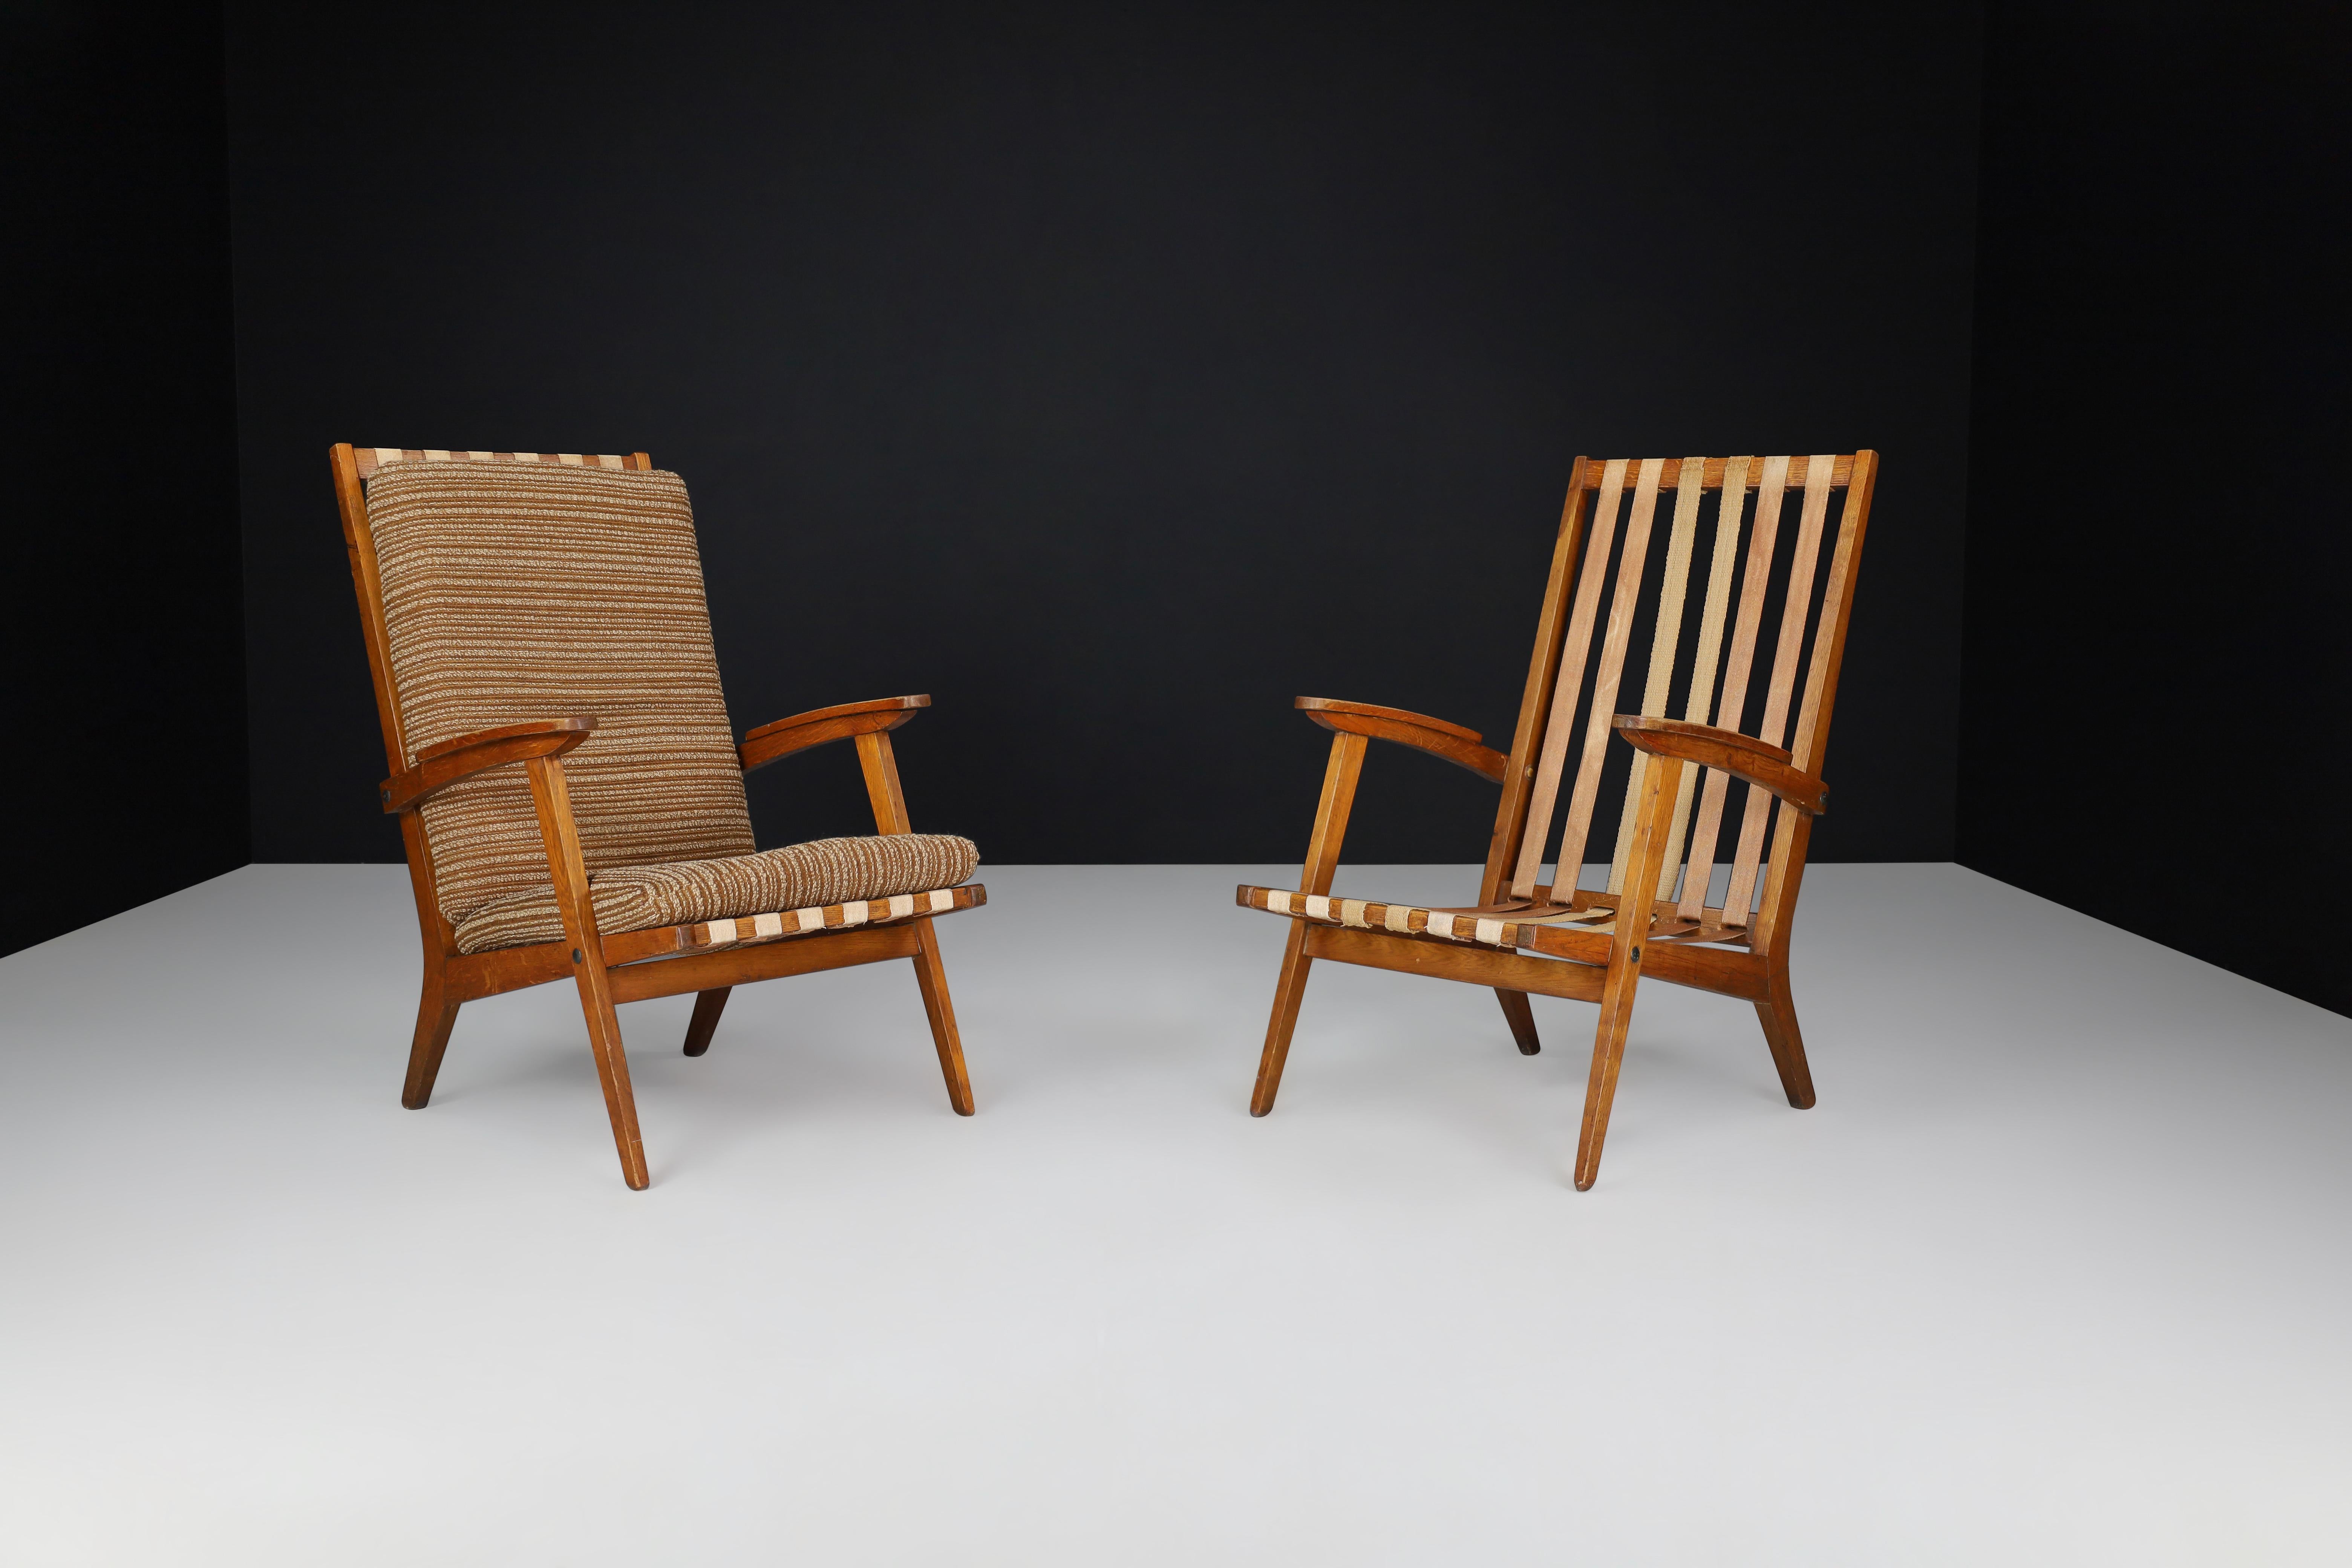 Fauteuils de salon sculpturaux en chêne avec tapisserie marron, France, années 1950 

Chaises de salon en chêne du milieu du siècle, fabriquées et conçues en France dans les années 1950. Ces chaises élégantes sont dotées du tissu d'ameublement